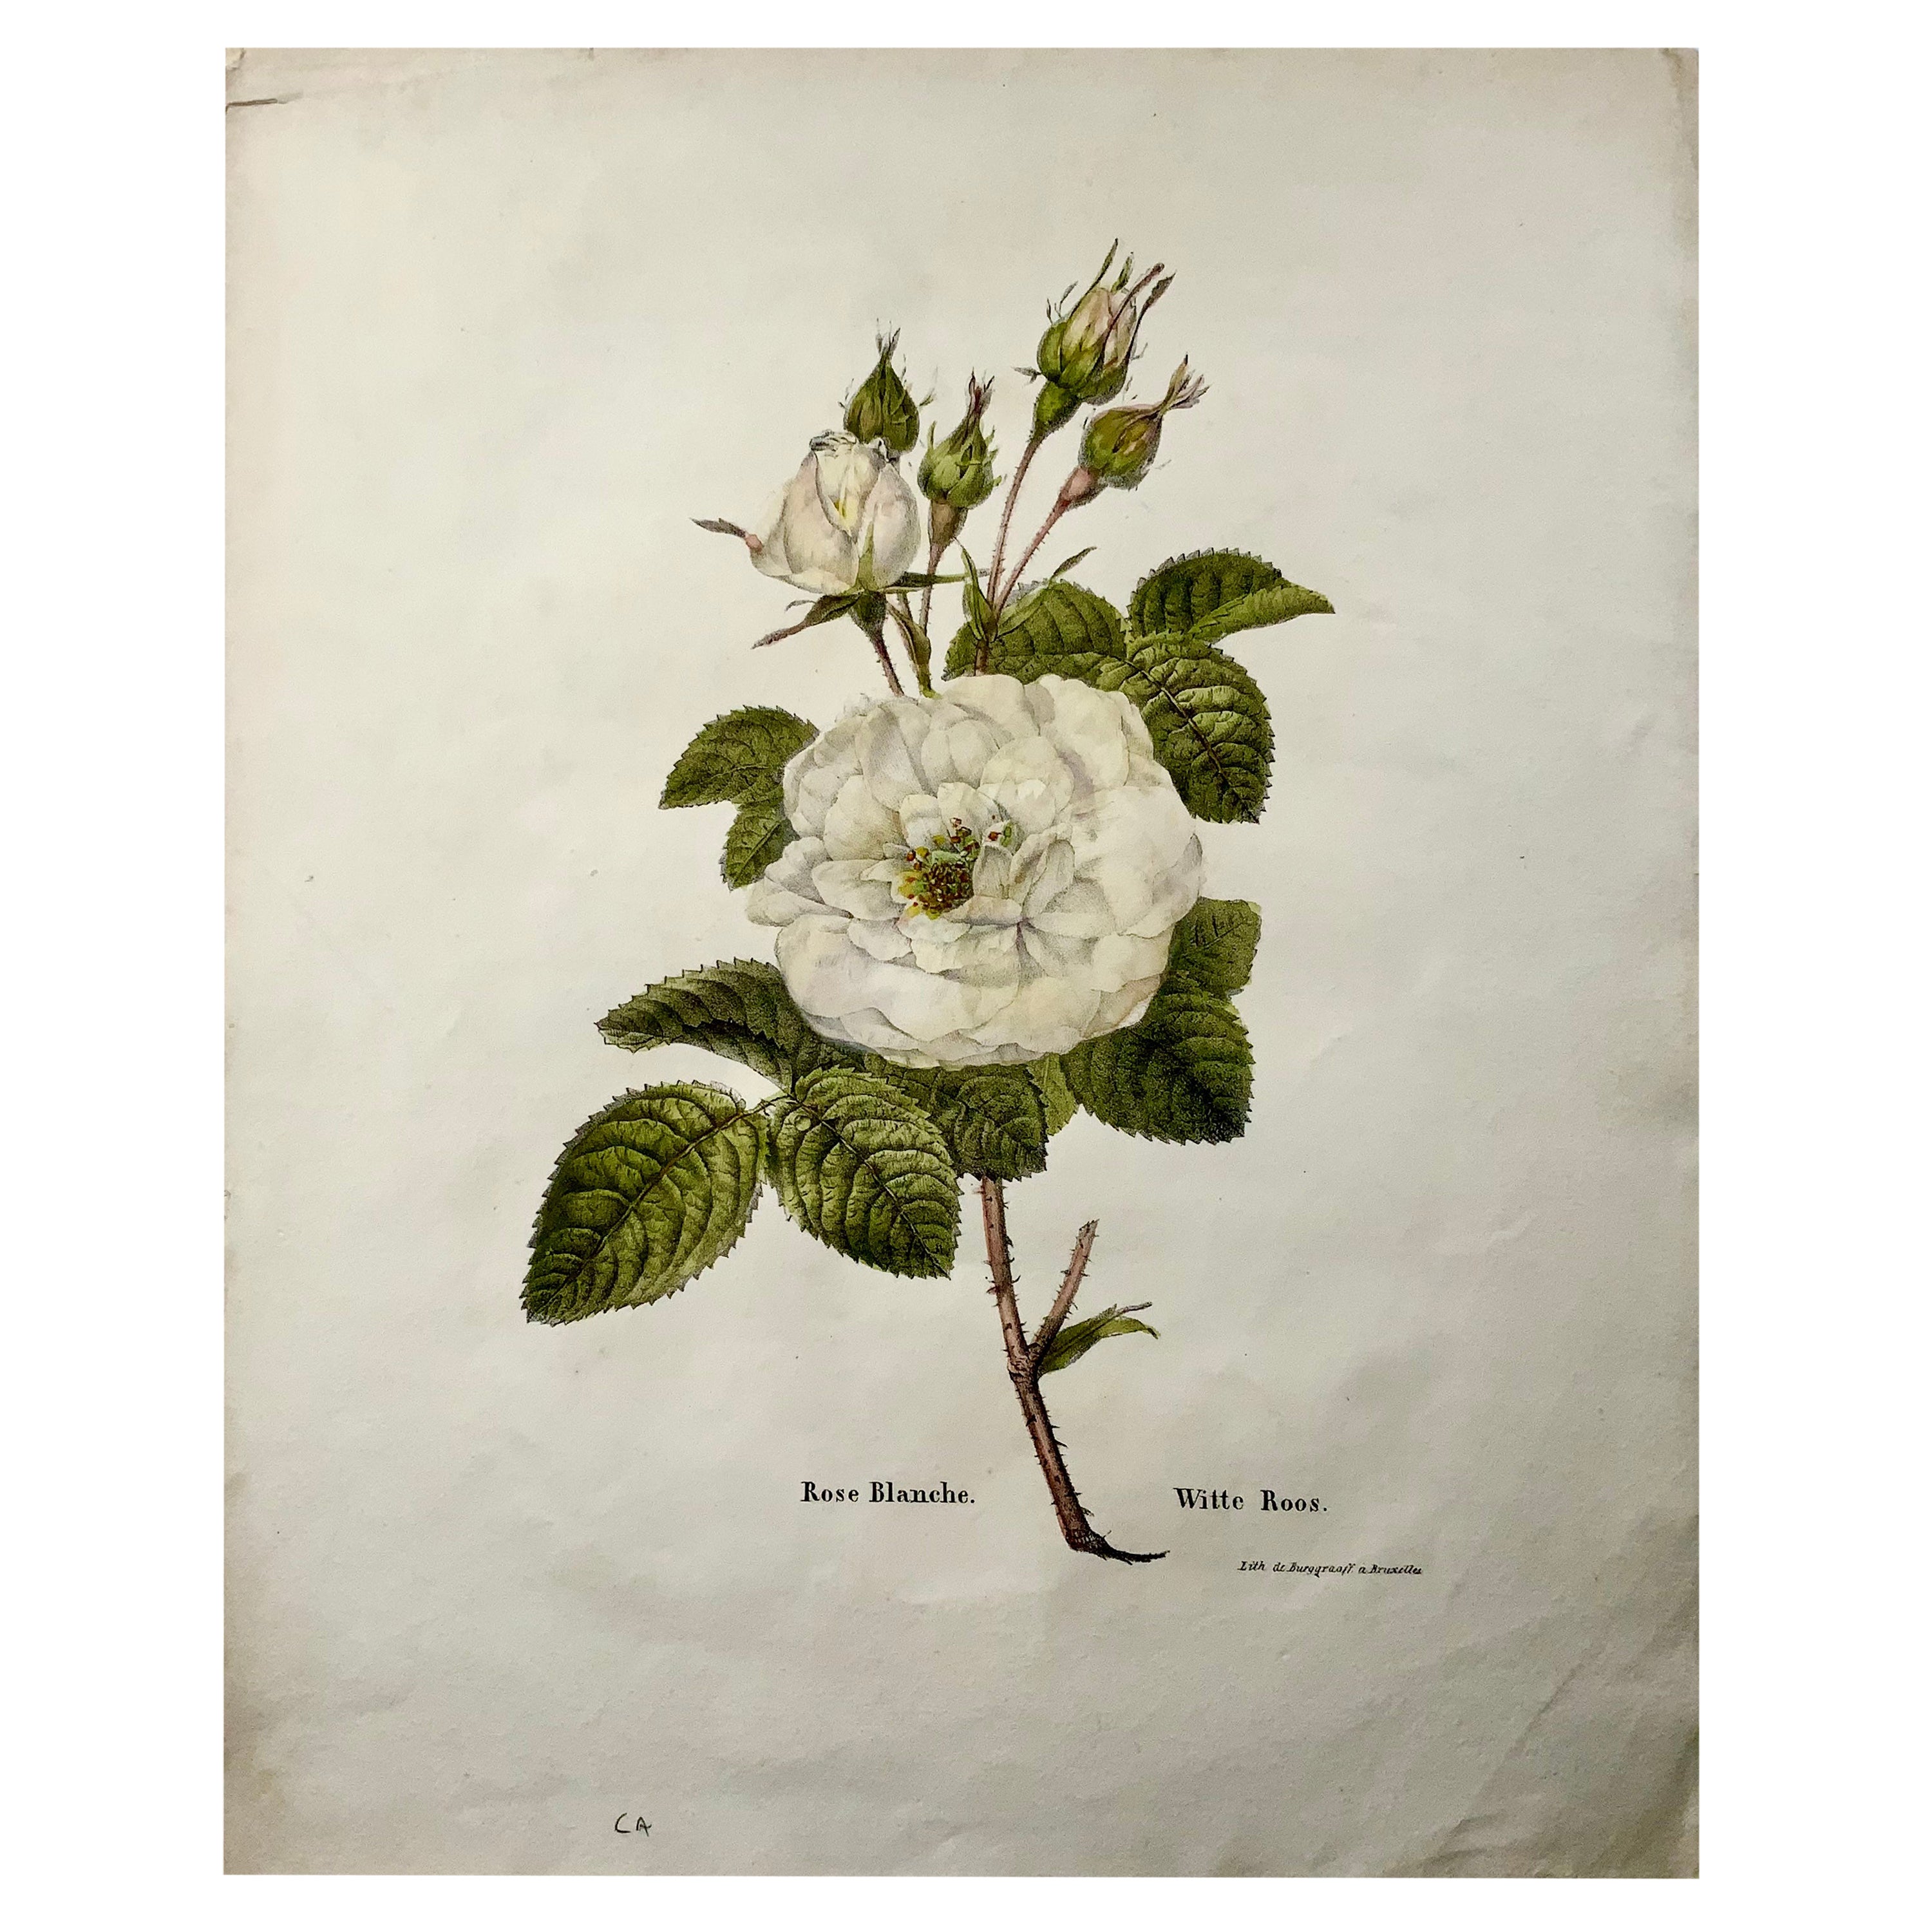 Lithographie de rose blanche 1820 c, folio de pierre par Burggraaf avec couleur à la main